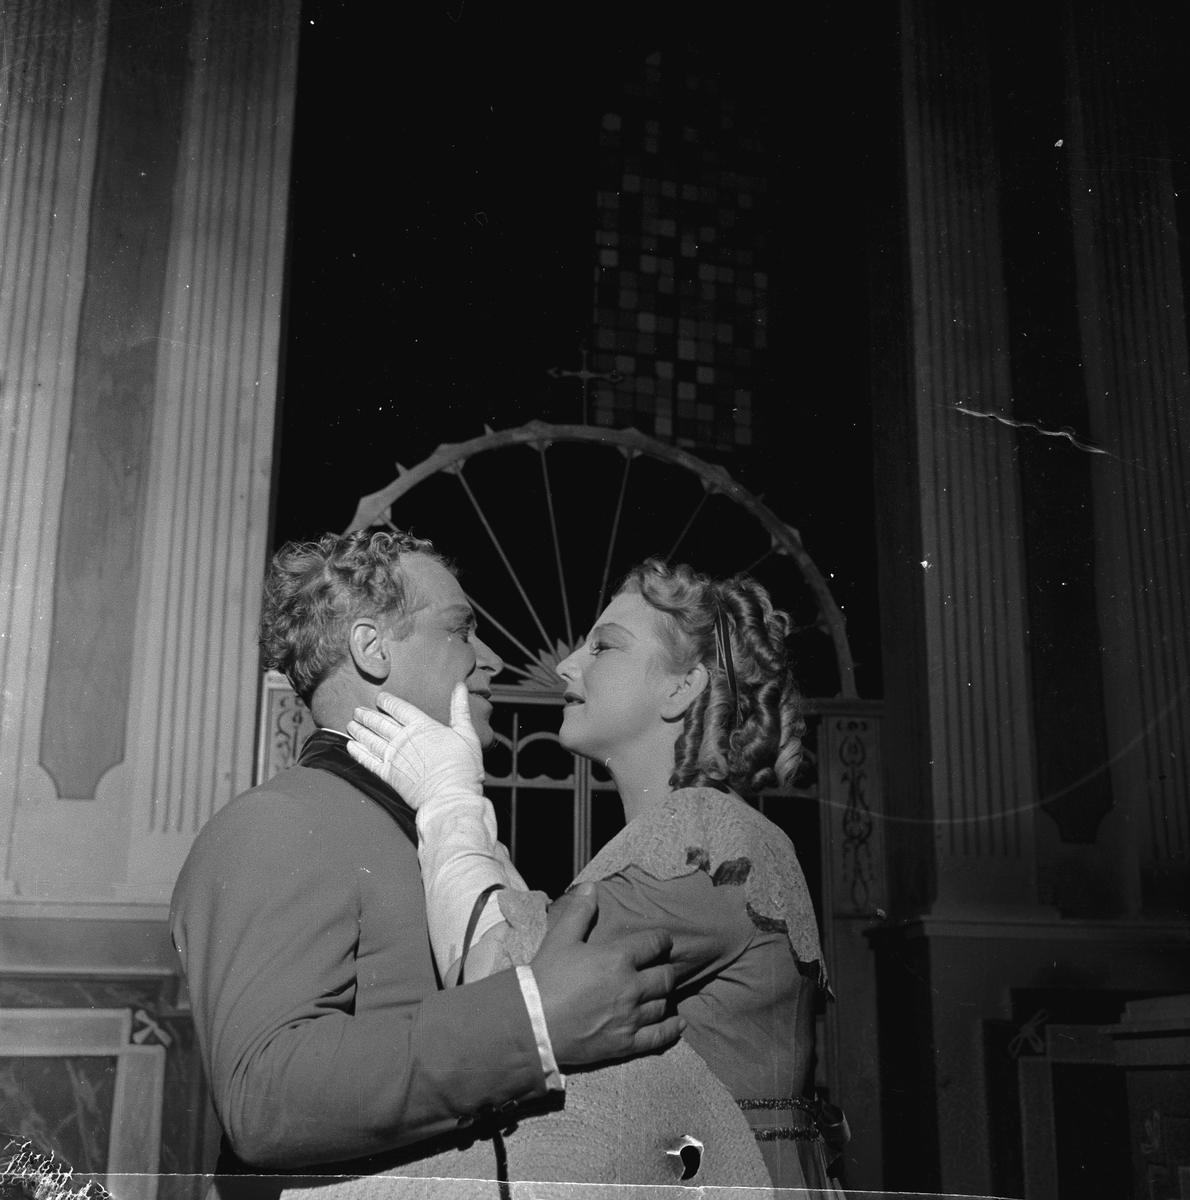 Oppsetning av "Tosca". To skuespiller sammen på scenen. Fotografert juni 1954.